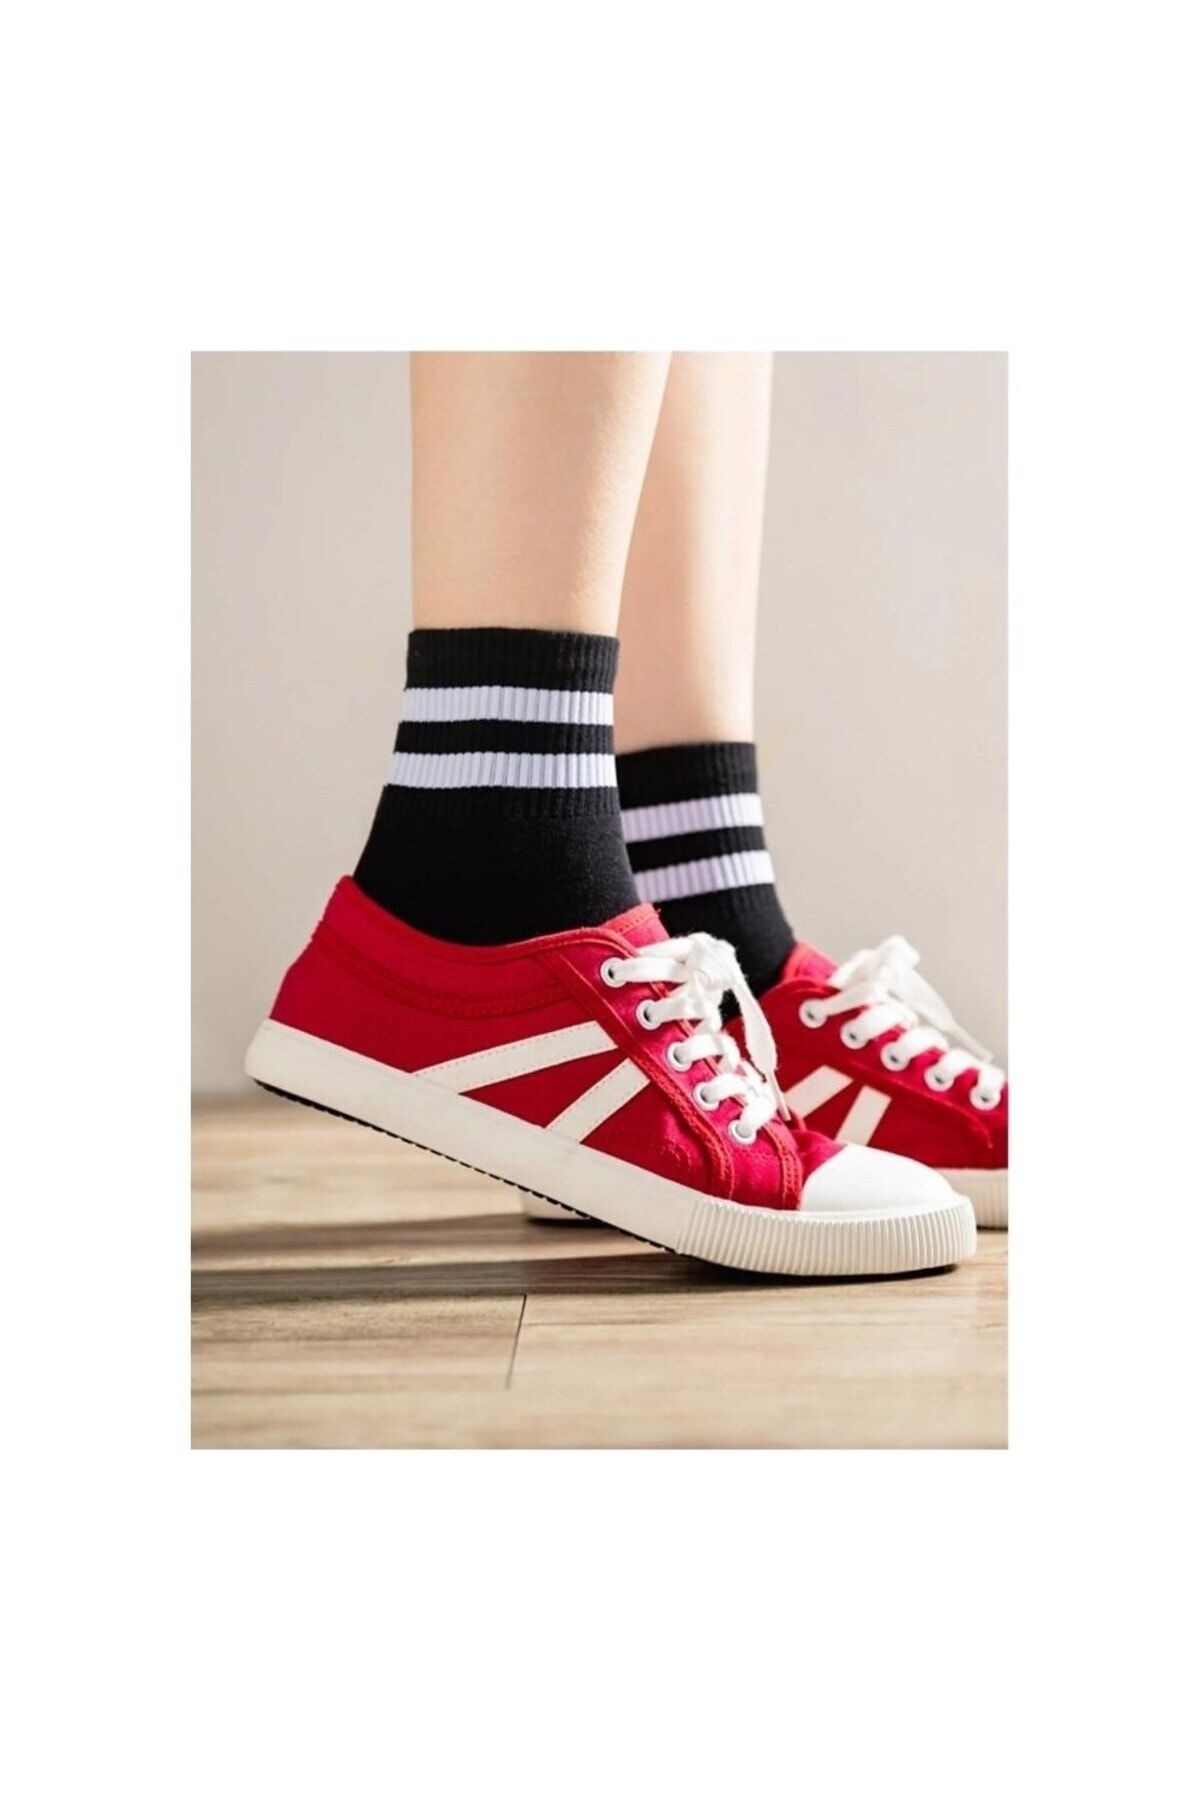 CFNY SOCKS 6 Çift Ekonomik Paket Erkek Kadın Unisex Çorap Soket Uzun Corap Renkli Desenli Kolej Çoraplar